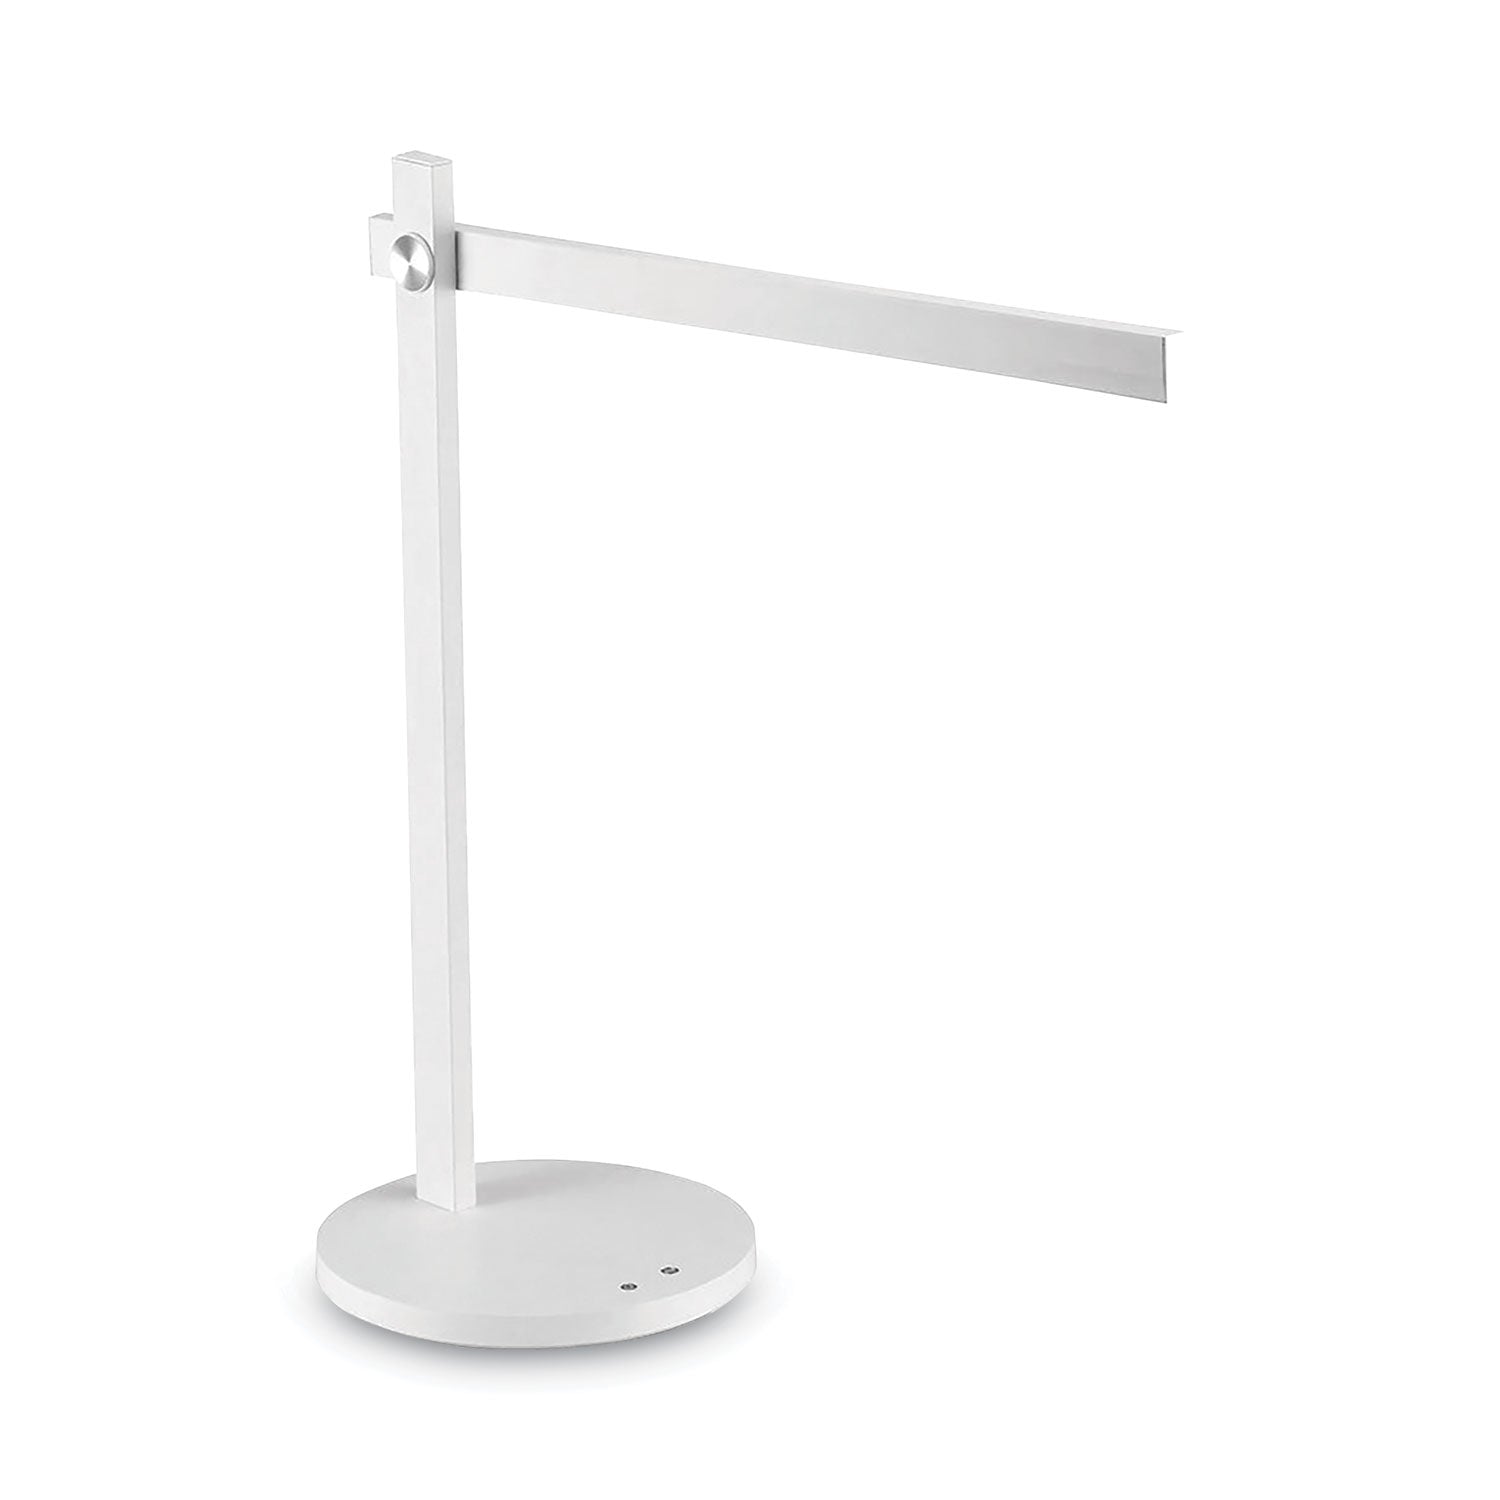 dimmable-bar-led-desk-lamp-white_bosvled1813wh - 1